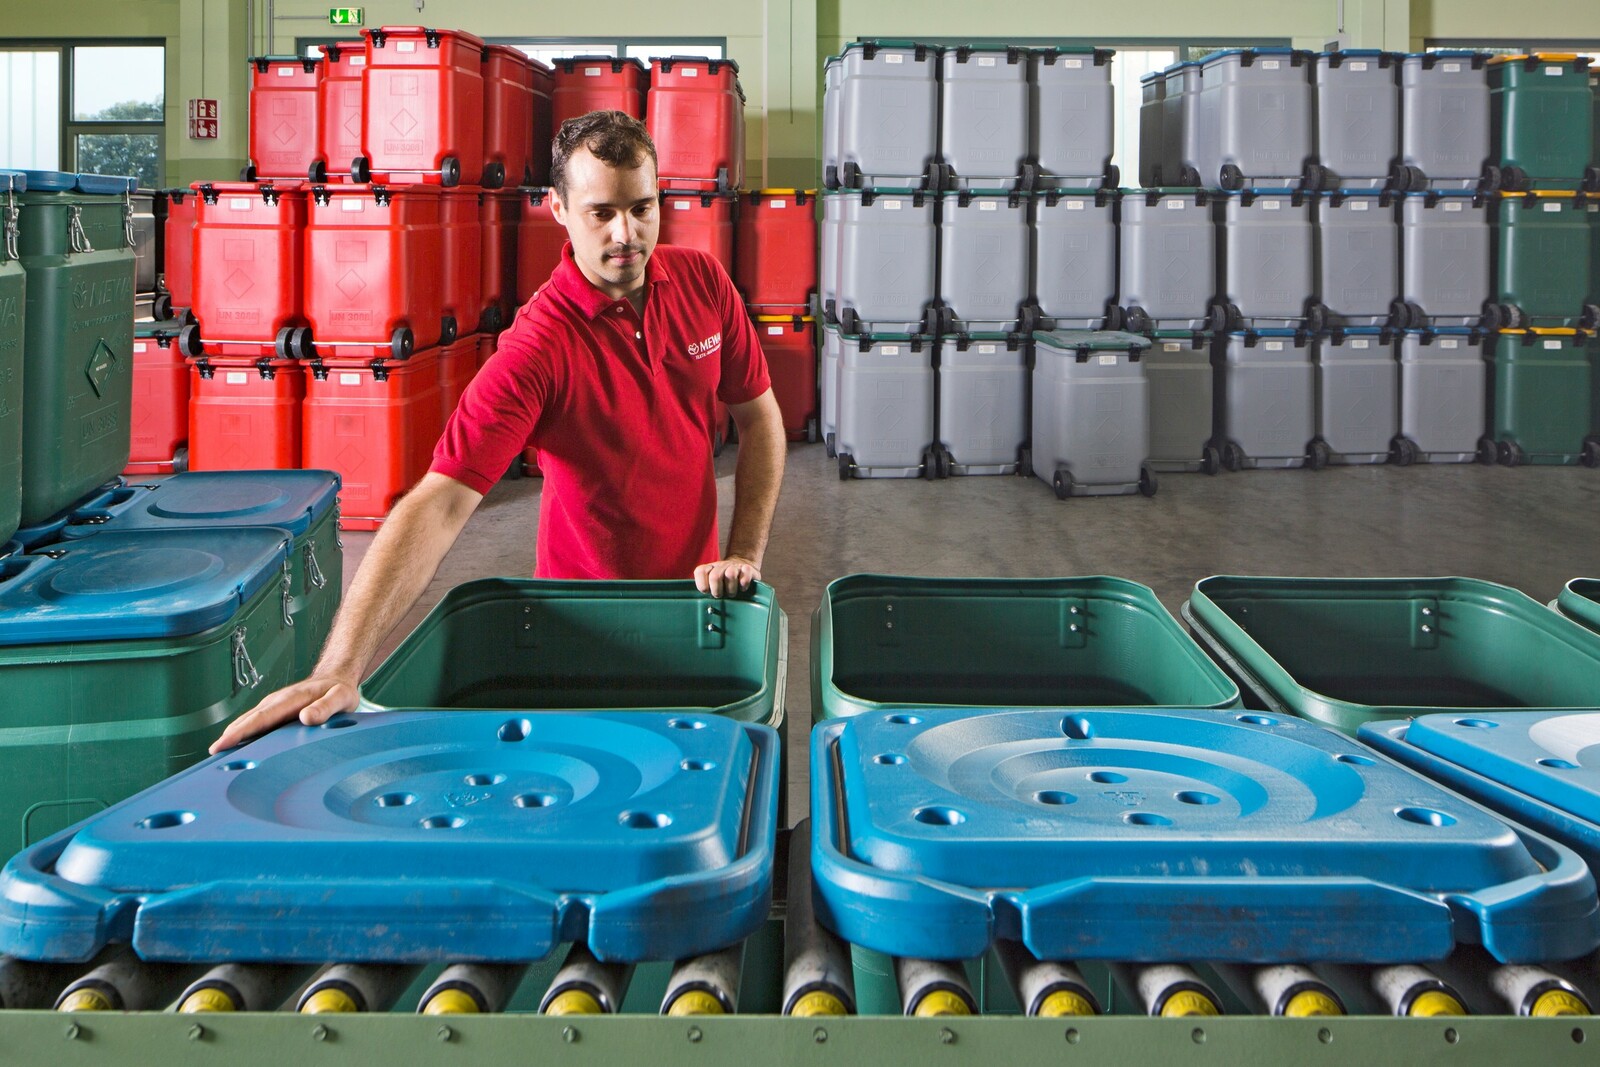 Mewa Safety Container sind stapelbar und palettentauglich. Zugleich erlauben integrierte Räder und Griffbügel den einfachen Standortwechsel bei Lagerung und Transport der Sicherheitscontainer. 